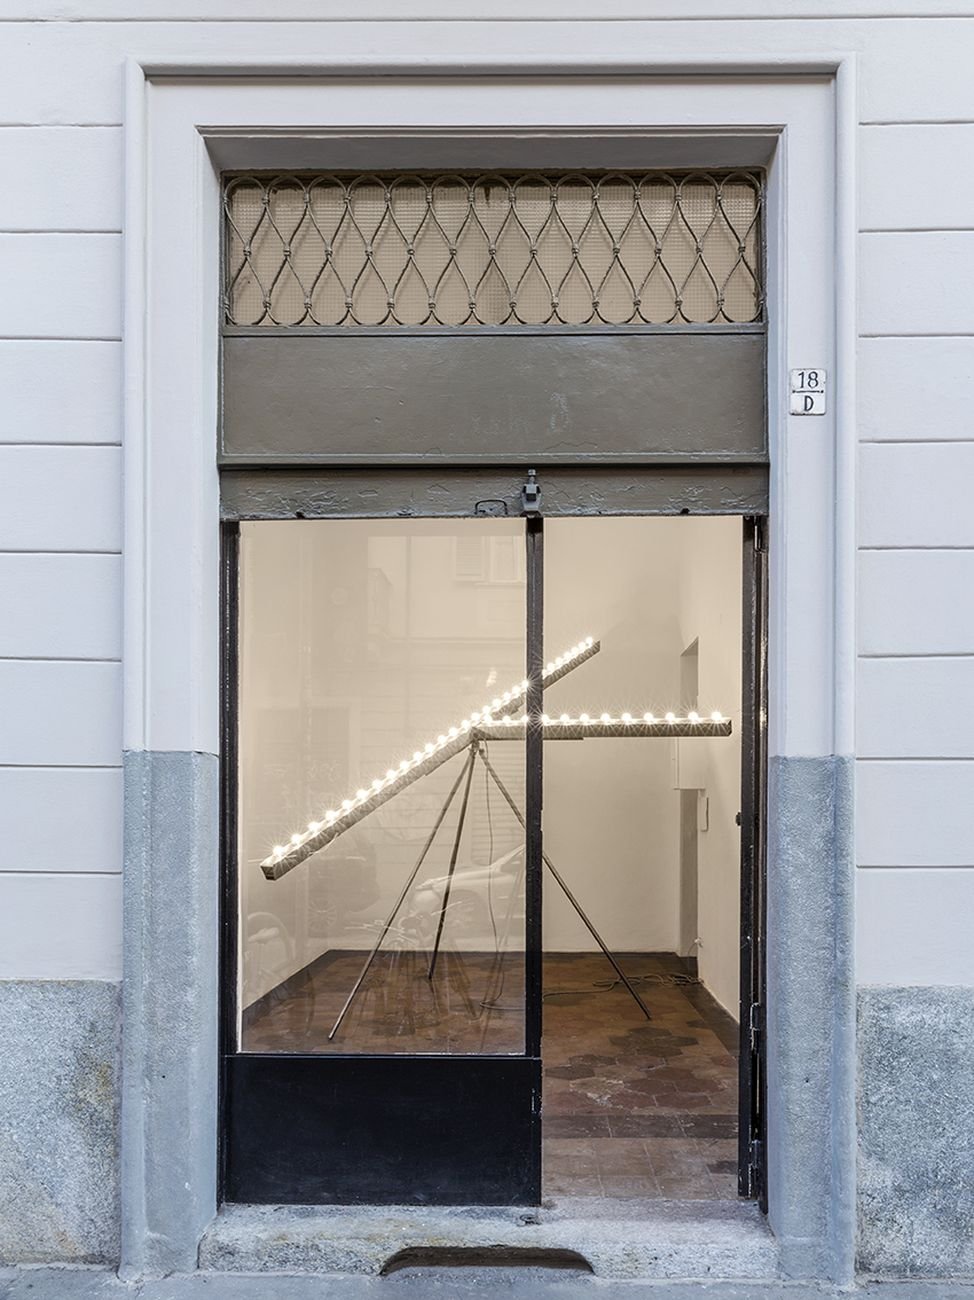 Giuseppe Gabellone, Untitled, 2018. Courtesy the artist & Quartz Studio, Torino, with the support of Fondazione Sardi per l’Arte